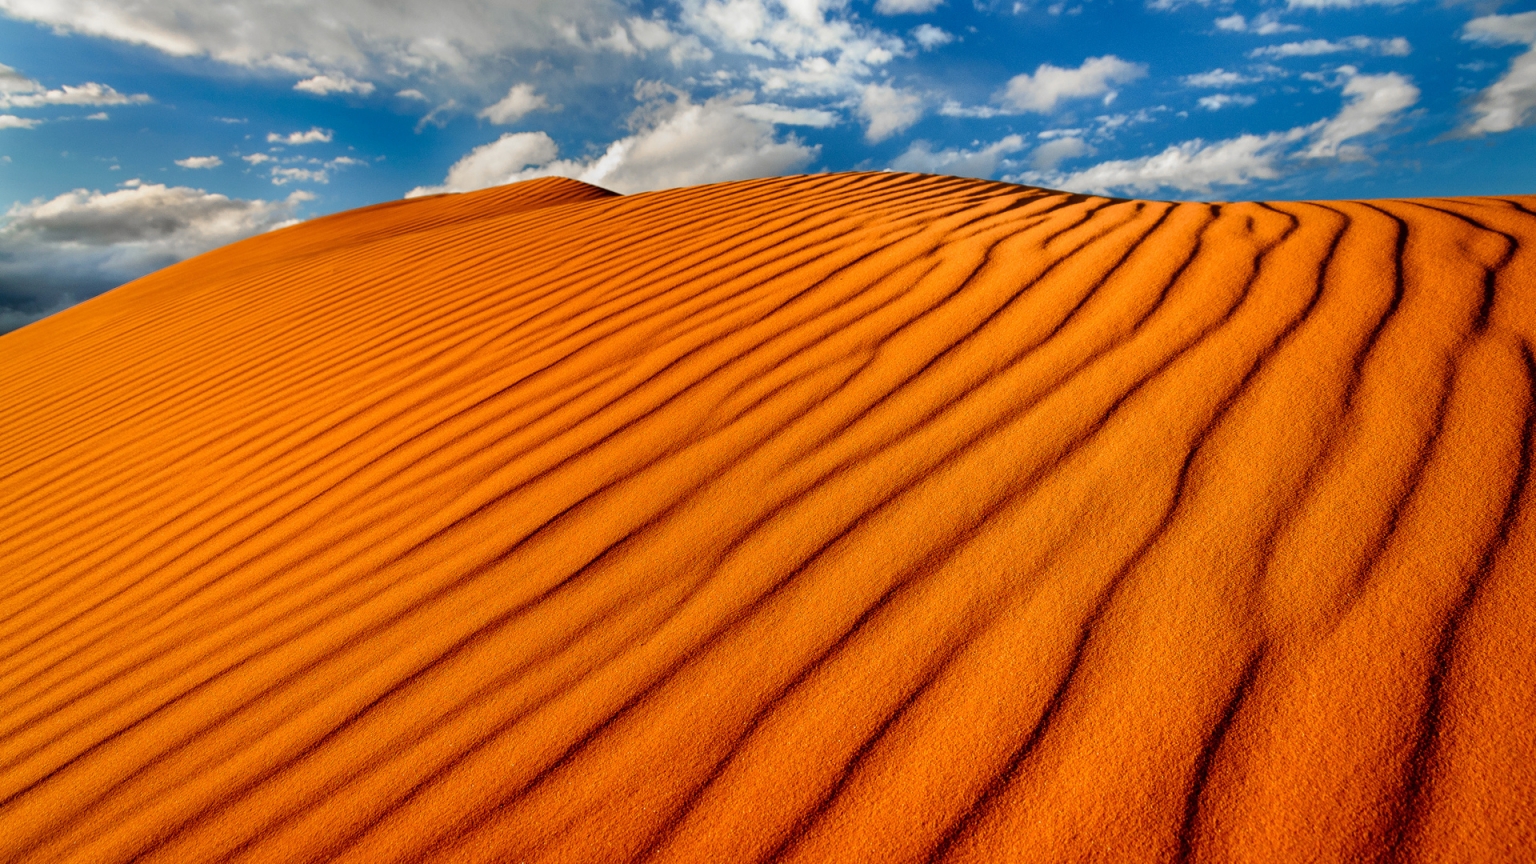 Sand Dunes for 1536 x 864 HDTV resolution